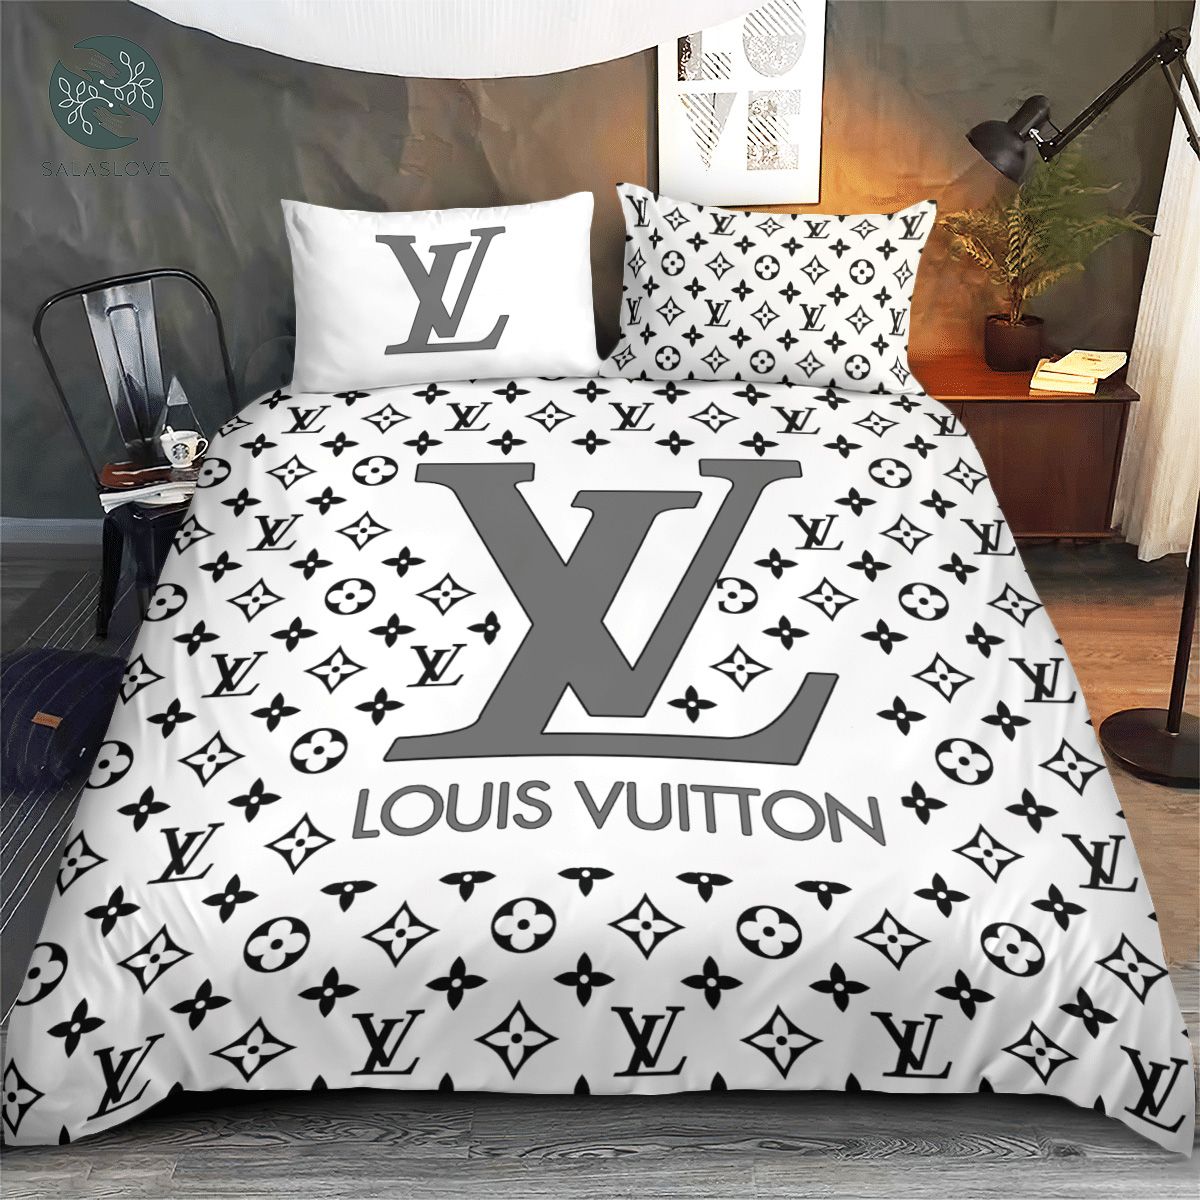 Muranotexcom on Twitter Louis Vuitton Bedding Set Louis Vuitton Red Bedding  Set Duvet Cover Home Decor httpstcowr2ZAjvVT5  Twitter